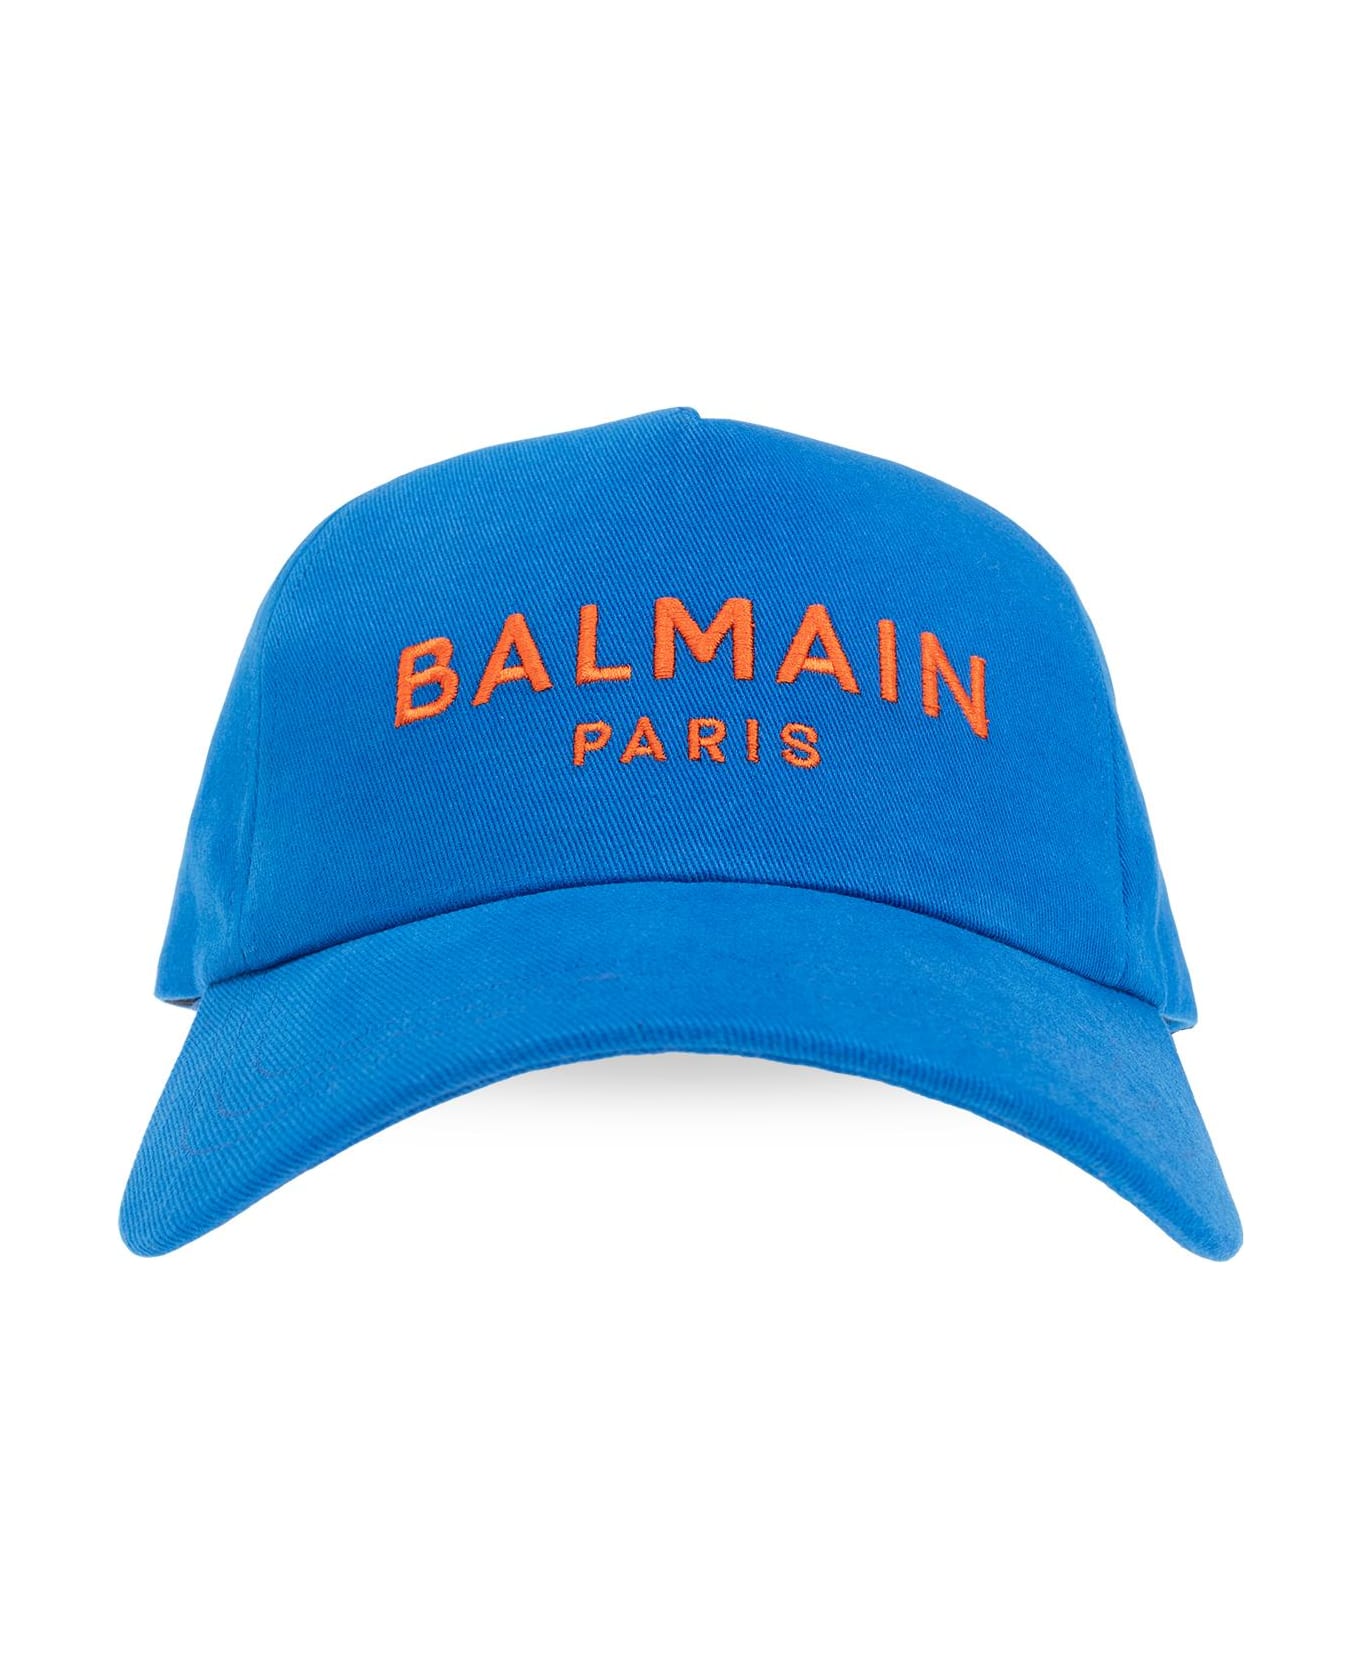 Balmain Baseball Cap - ROYAL BLUE